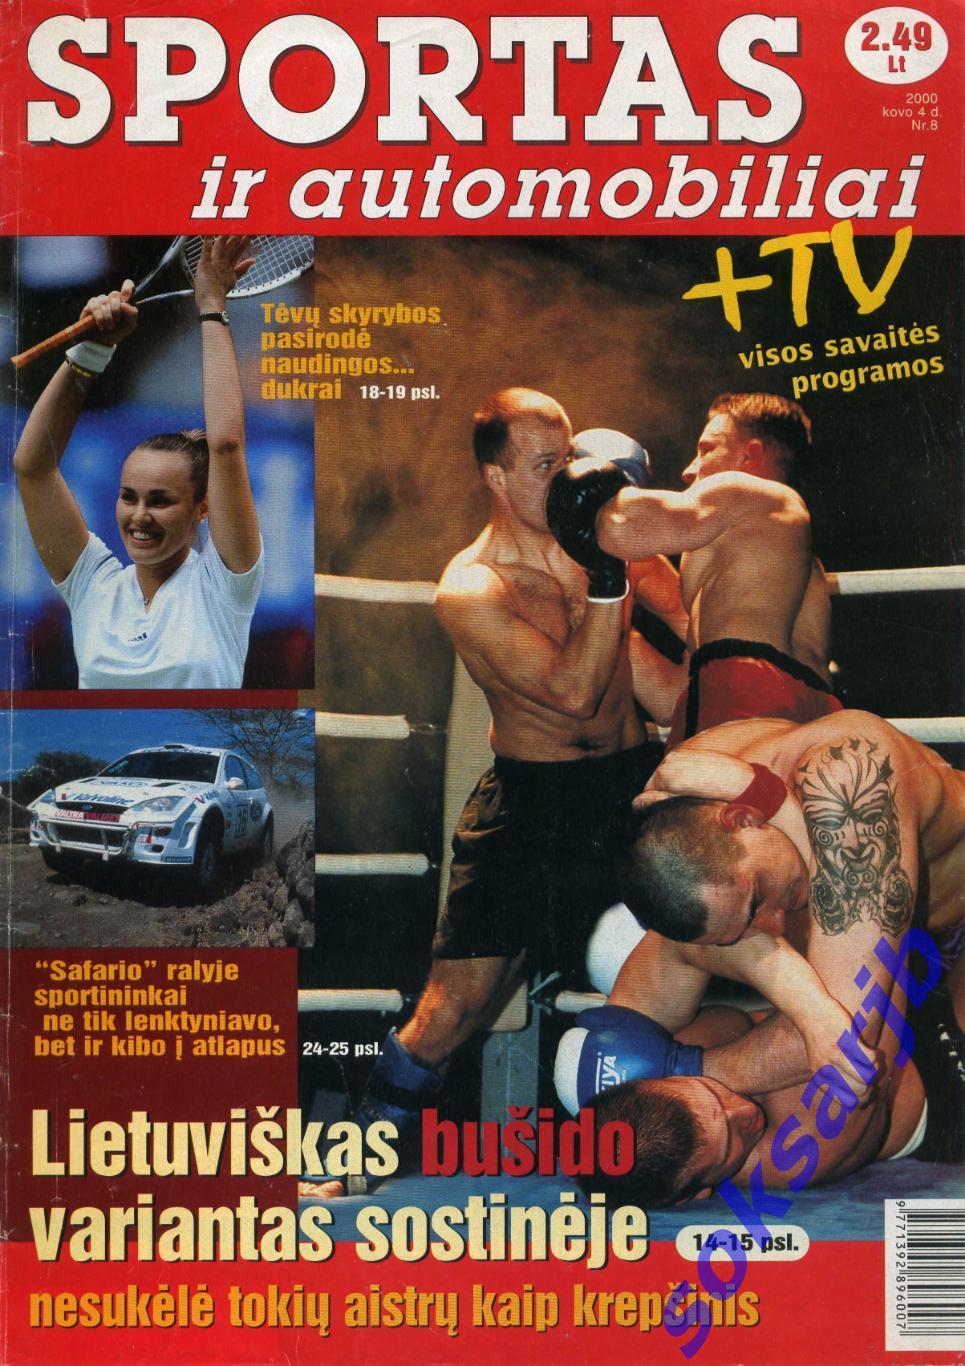 2000. Литовский спортивный журнал SPORTAS.